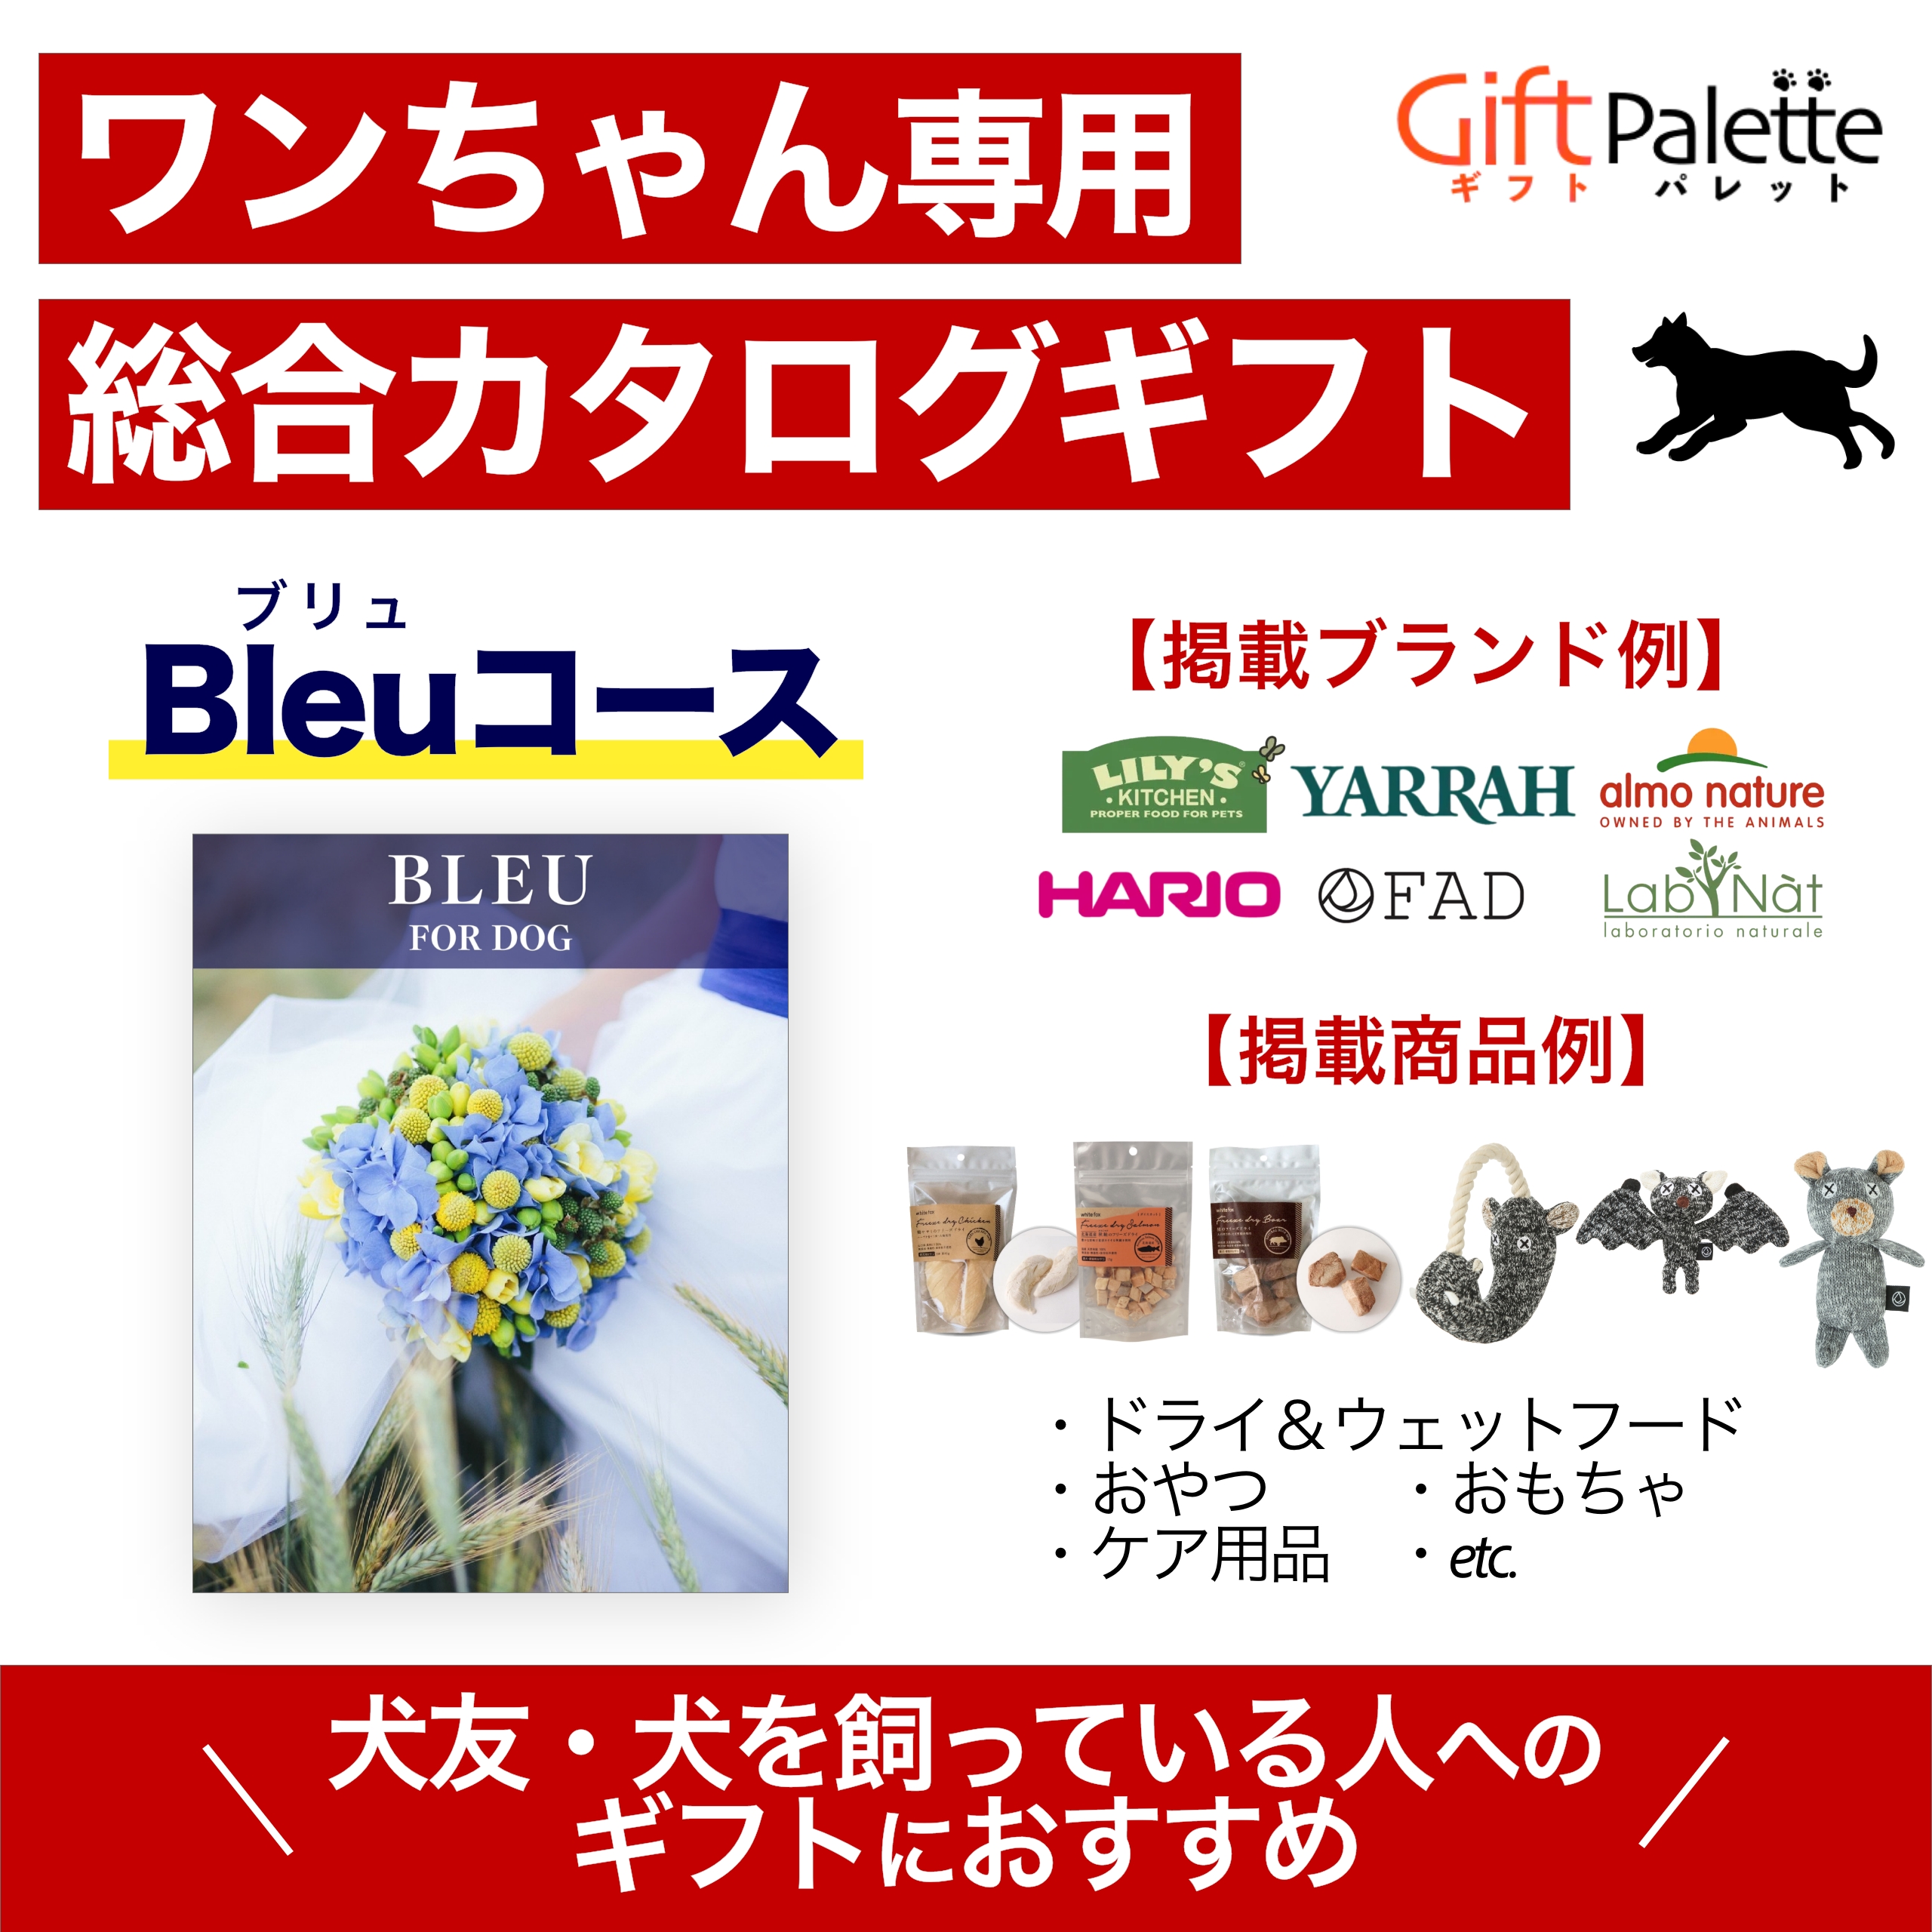 ワンちゃん向け総合オンラインカタログギフト – Bleuコース – ワン